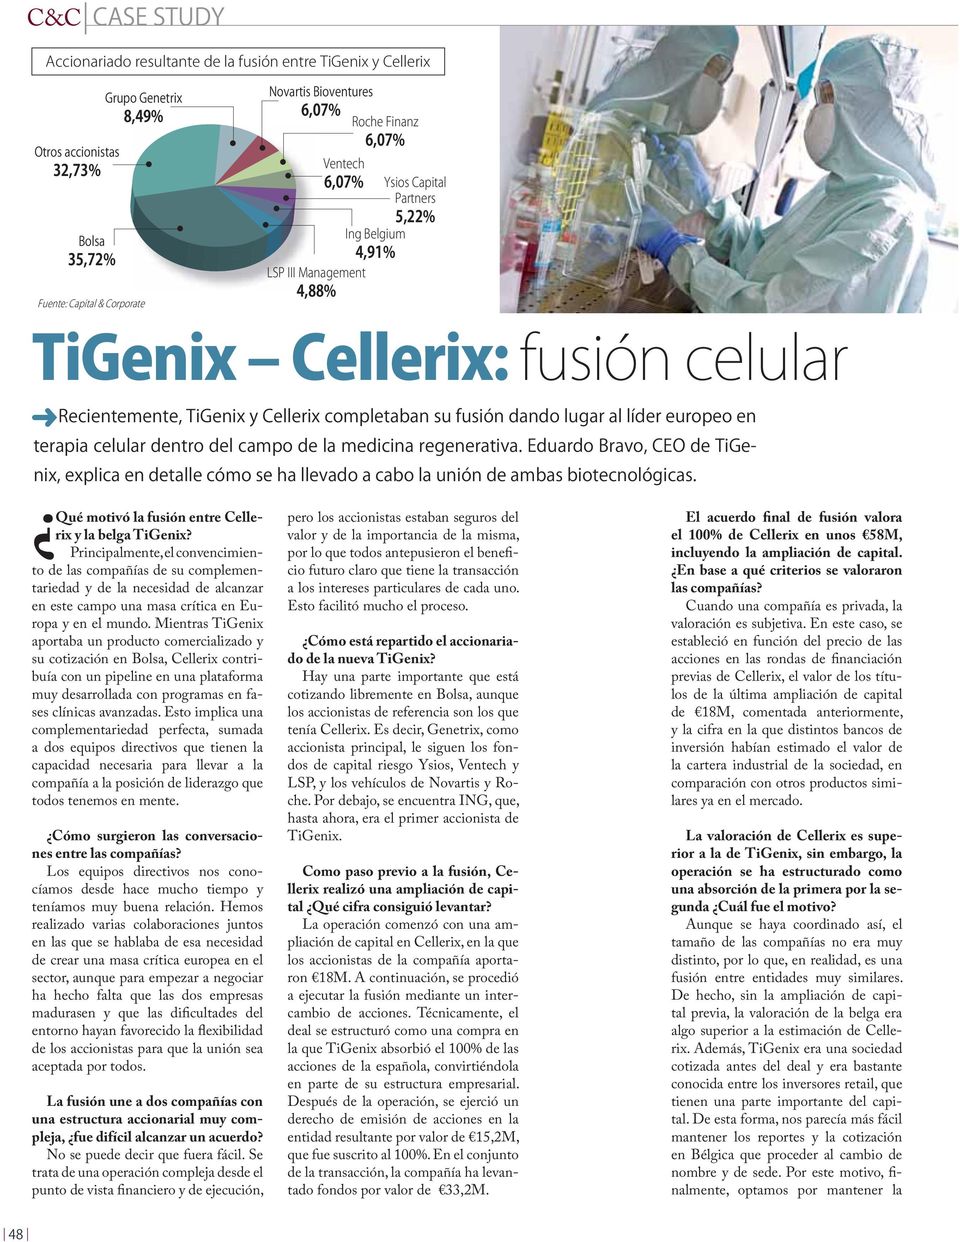 Mientras TiGenix aportaba un producto comercializado y su cotización en Bolsa, Cellerix contribuía con un pipeline en una plataforma muy desarrollada con programas en fases clínicas avanzadas.